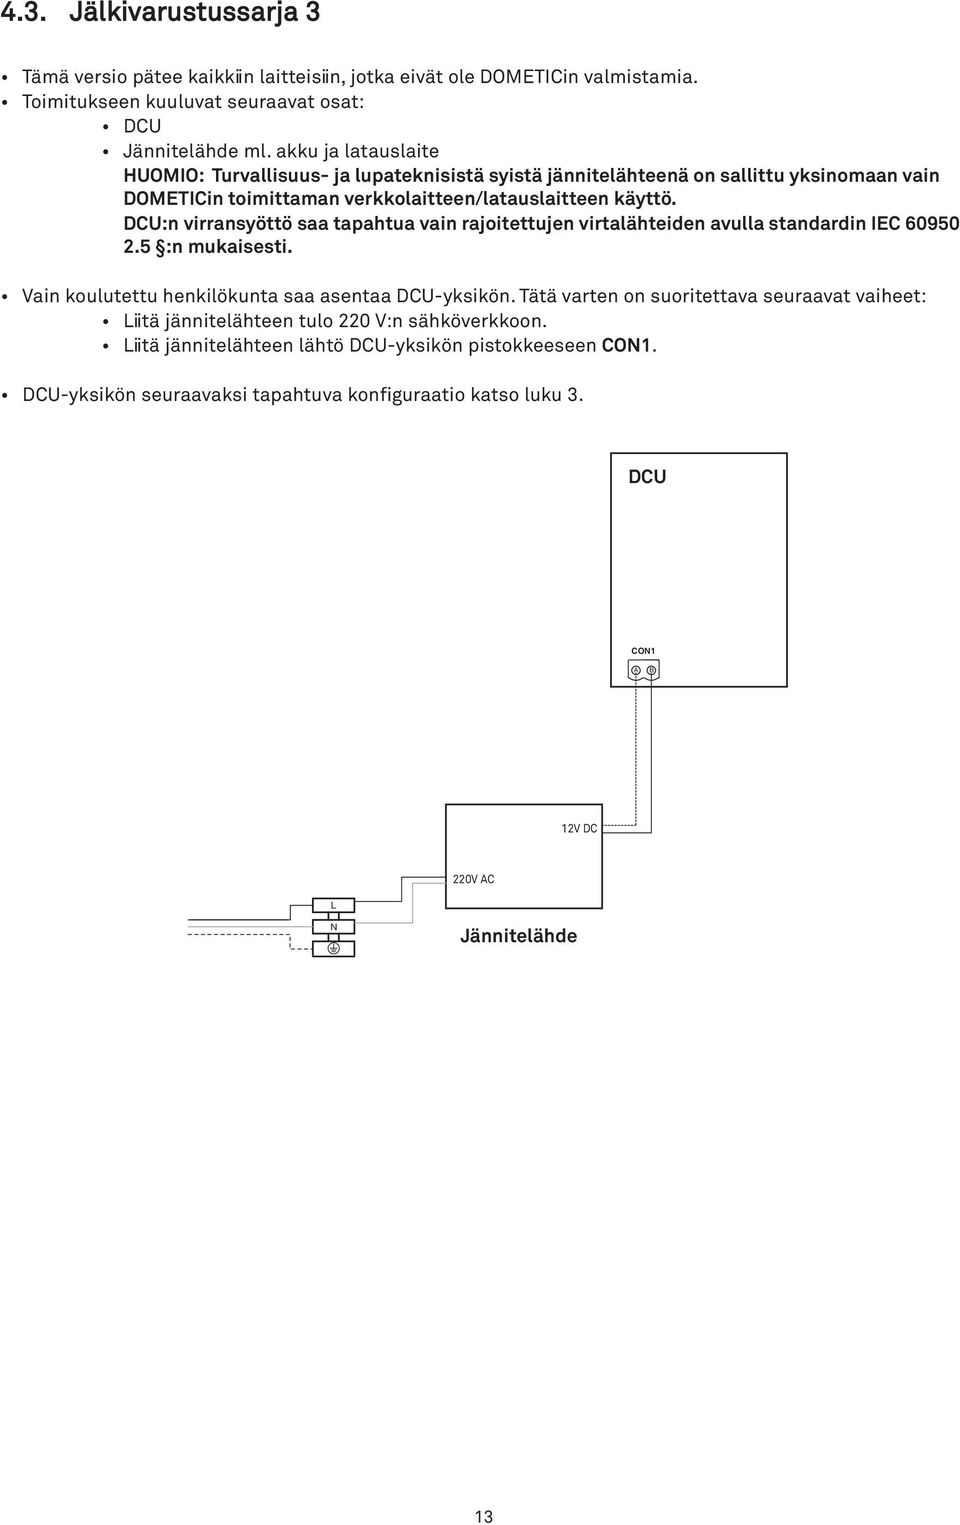 DCU:n virransyöttö saa tapahtua vain rajoitettujen virtalähteiden avulla standardin IEC 60950 2.5 :n mukaisesti. Vain koulutettu henkilökunta saa asentaa DCU-yksikön.